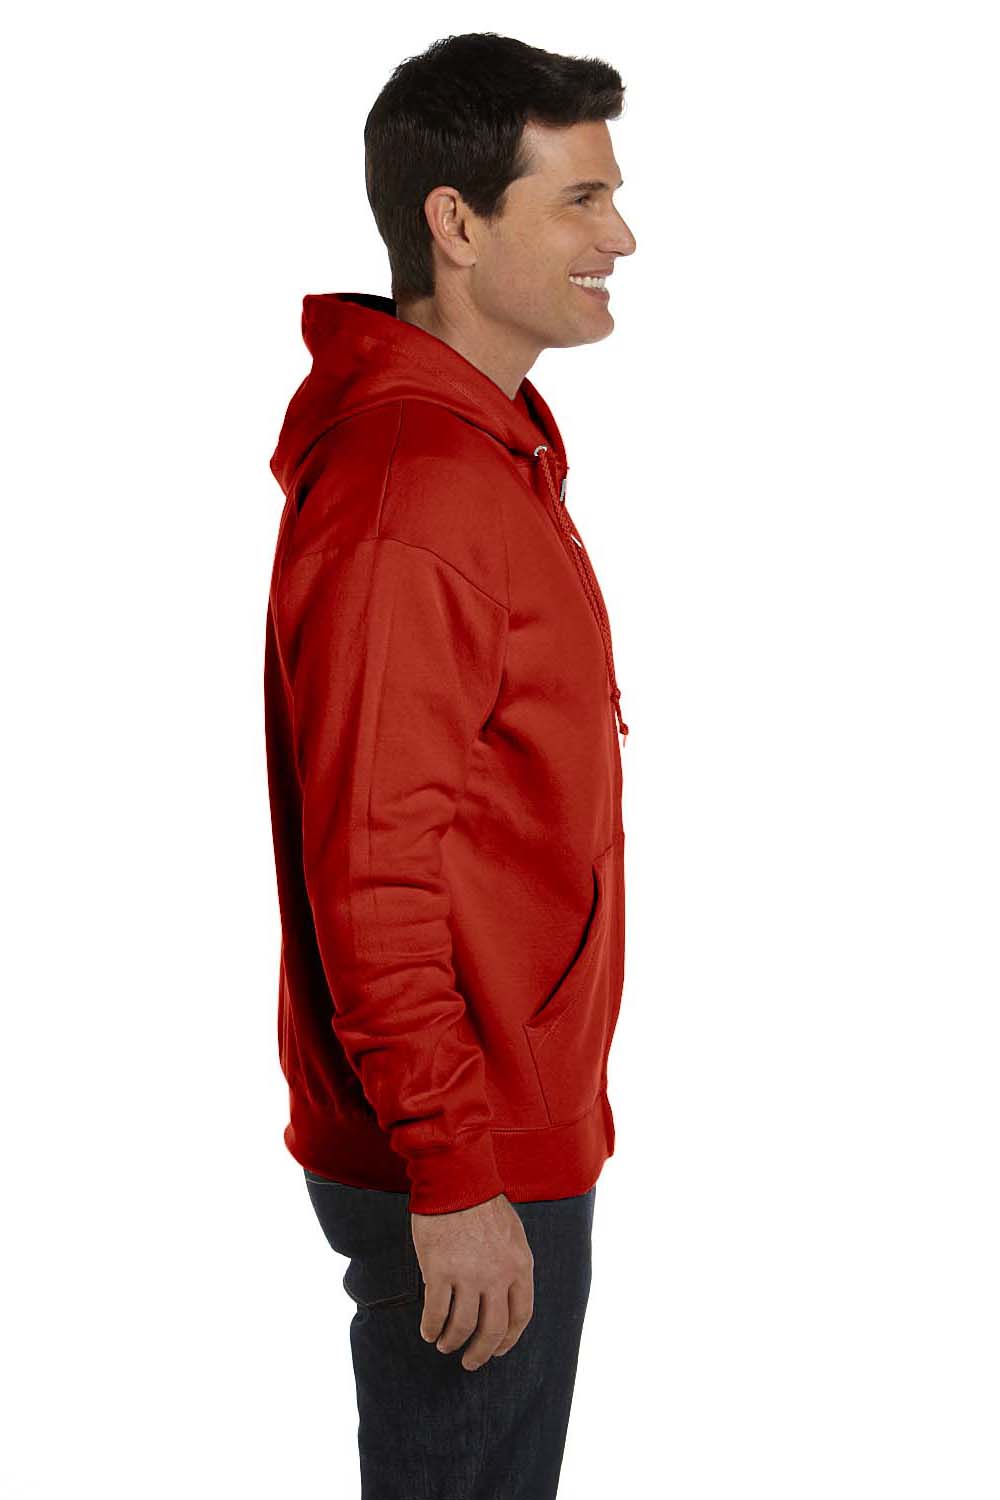 Hanes P180 Mens EcoSmart Print Pro XP Full Zip Hooded Sweatshirt Hoodie Red Side